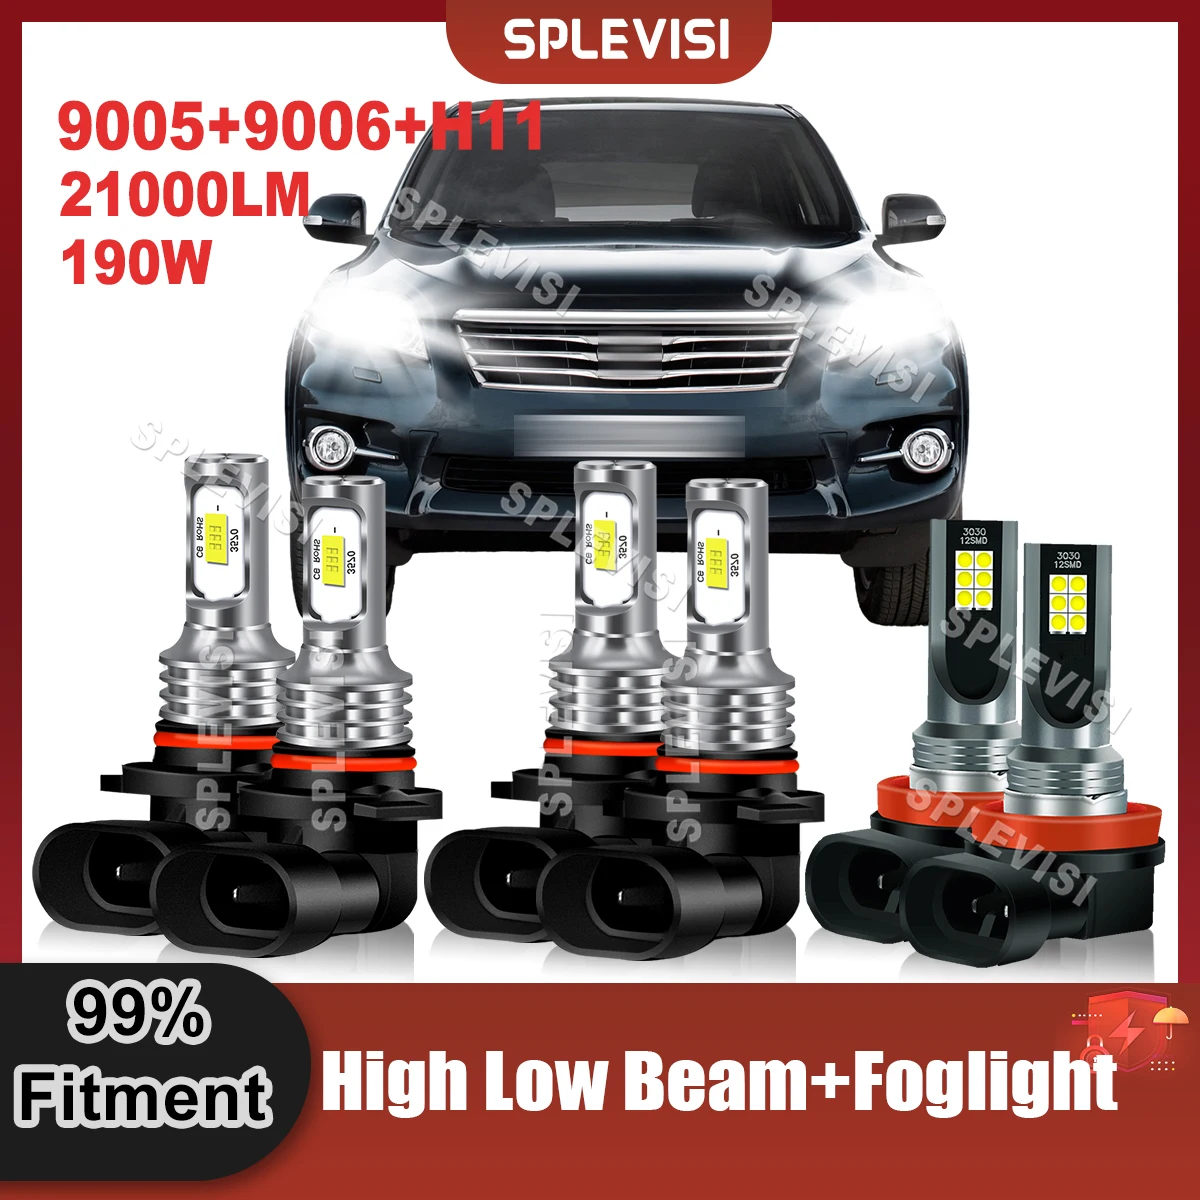 

Brighter White LED Headlight High Low Beam Foglight 9005+9006+H11 Bulbs Combo For Toyota RAV4 2006 2007 2008 2009 2010 2011 2012